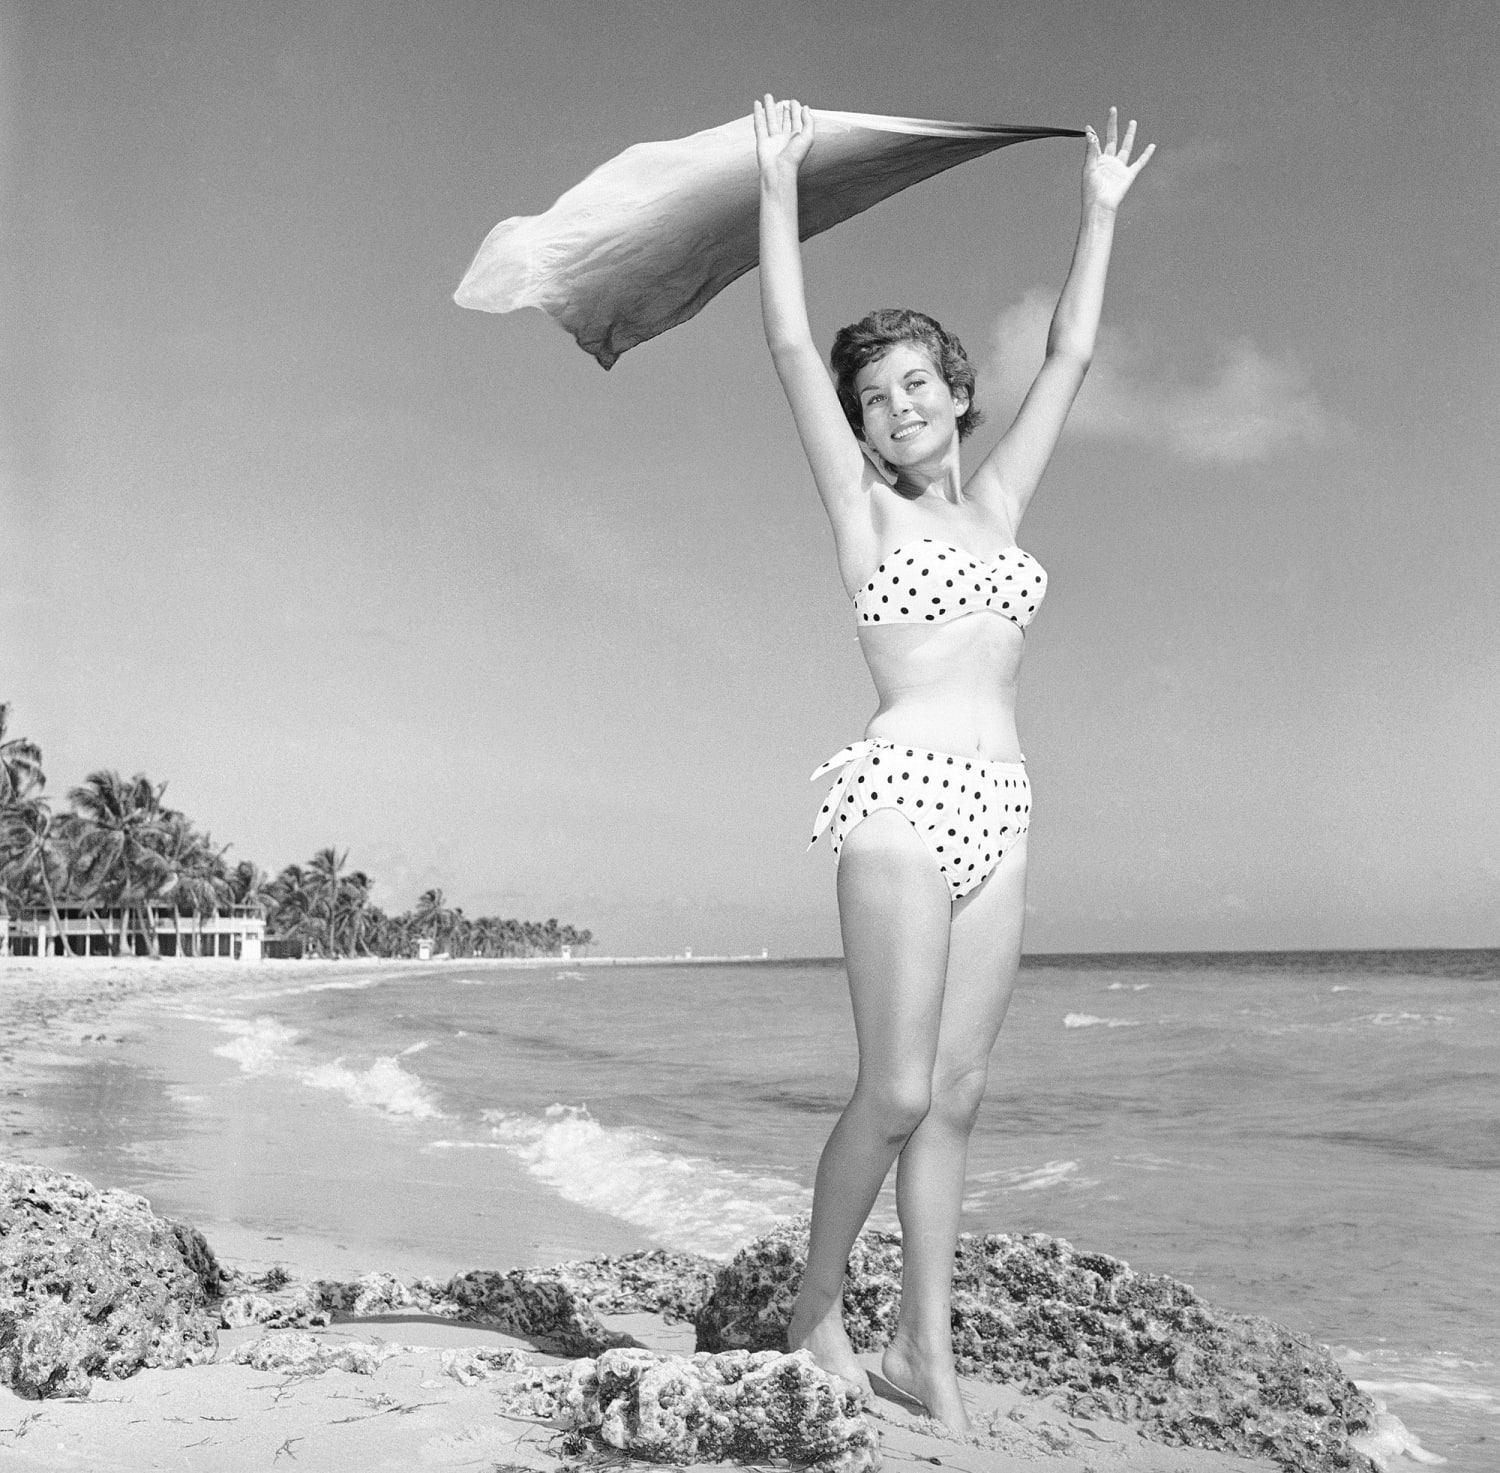 History of the Bikini - Bikini Atoll - Origin of Two Piece Swimsuits